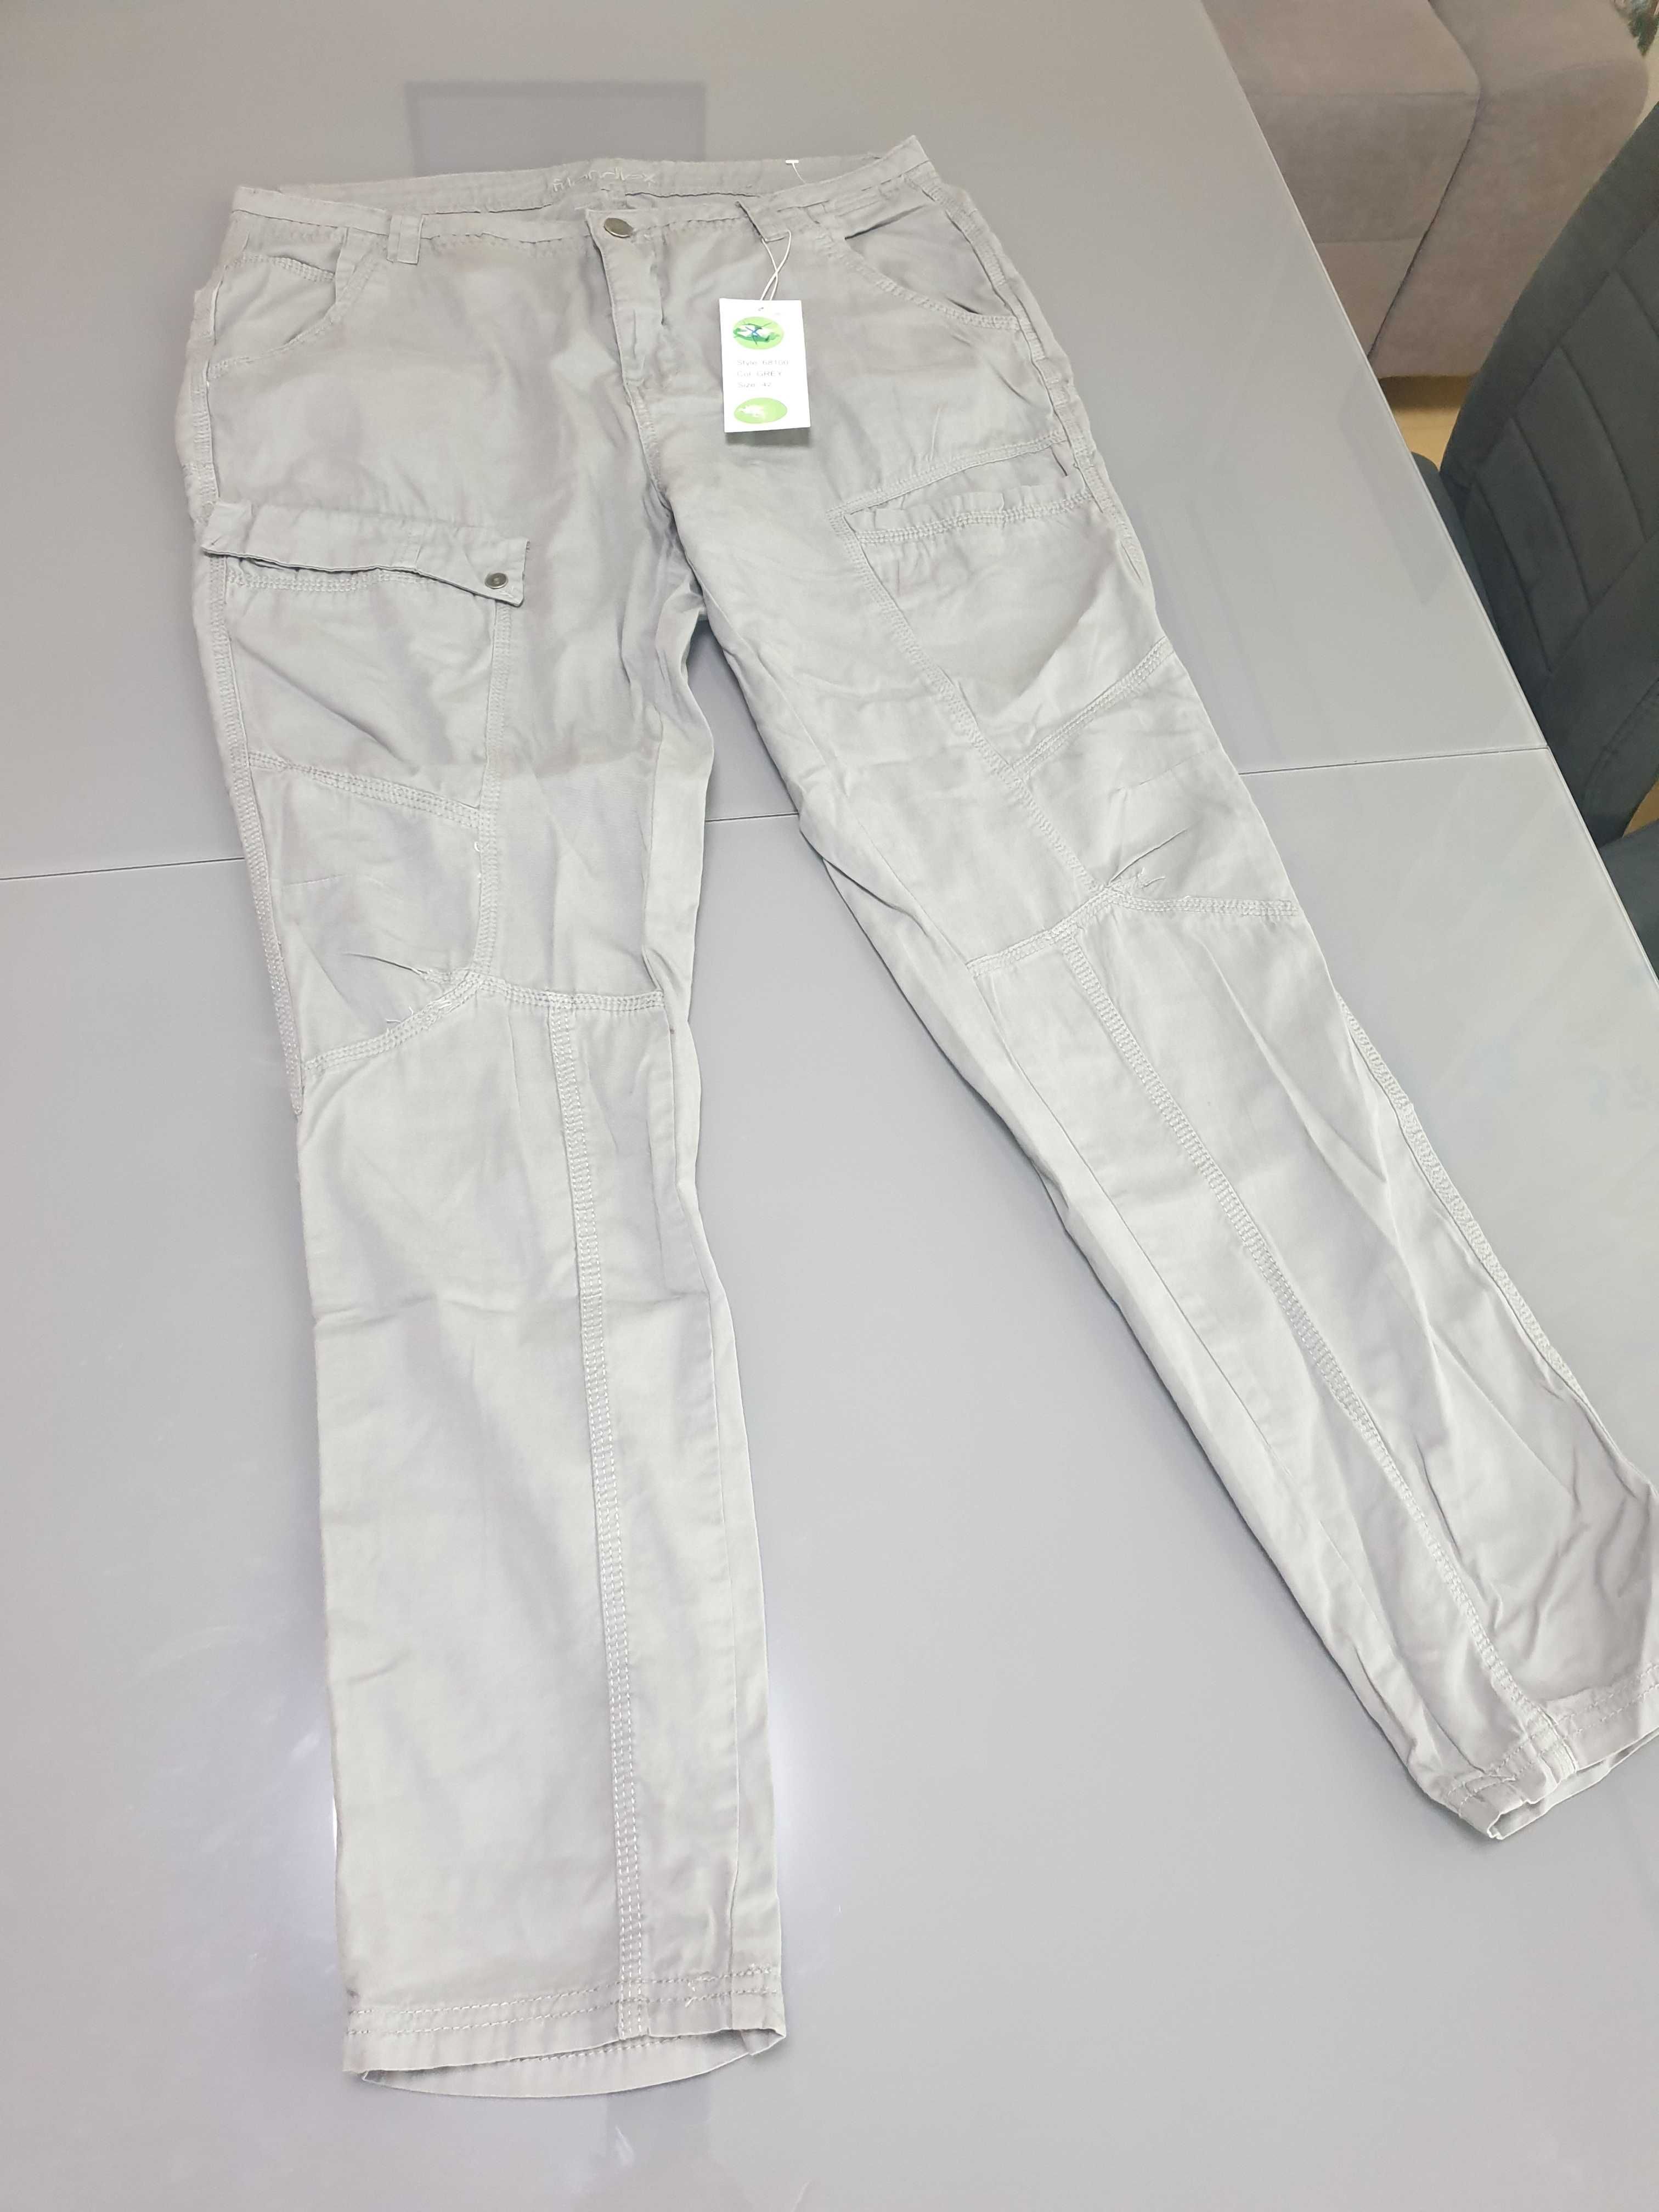 Дамски спортен панталон, размер EU42, талия 90-92 см.